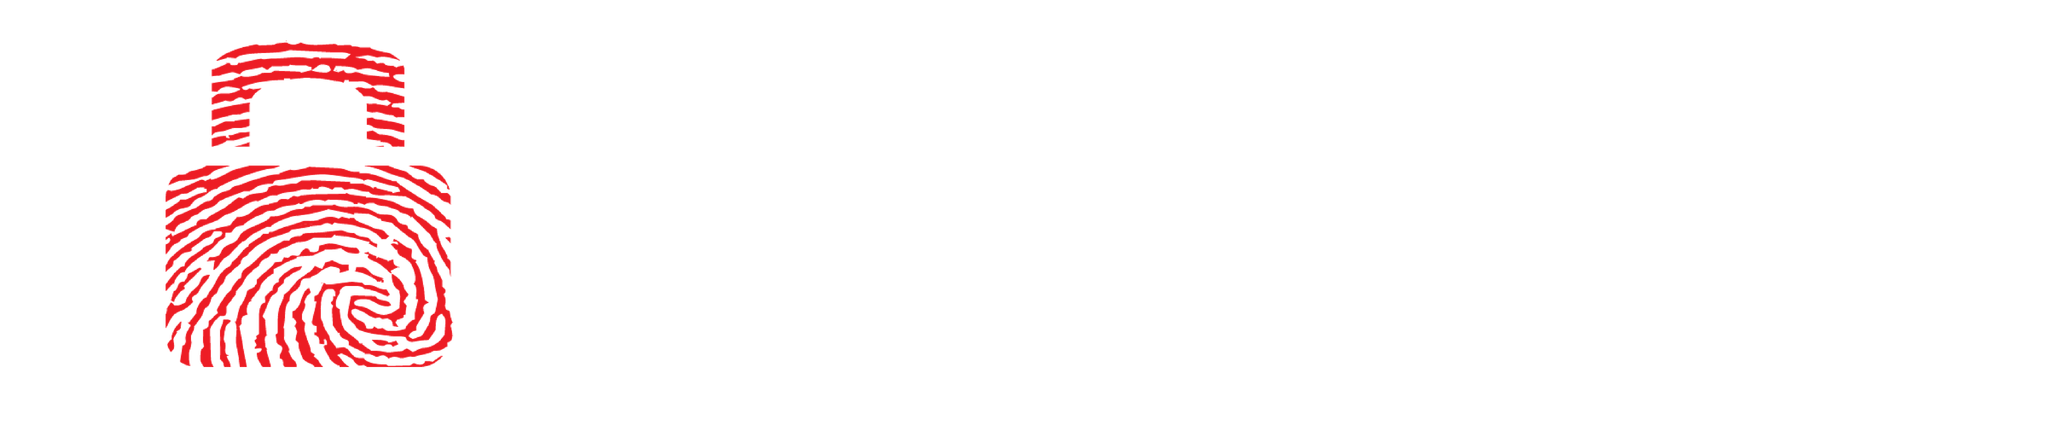 GISEC 2021 logo